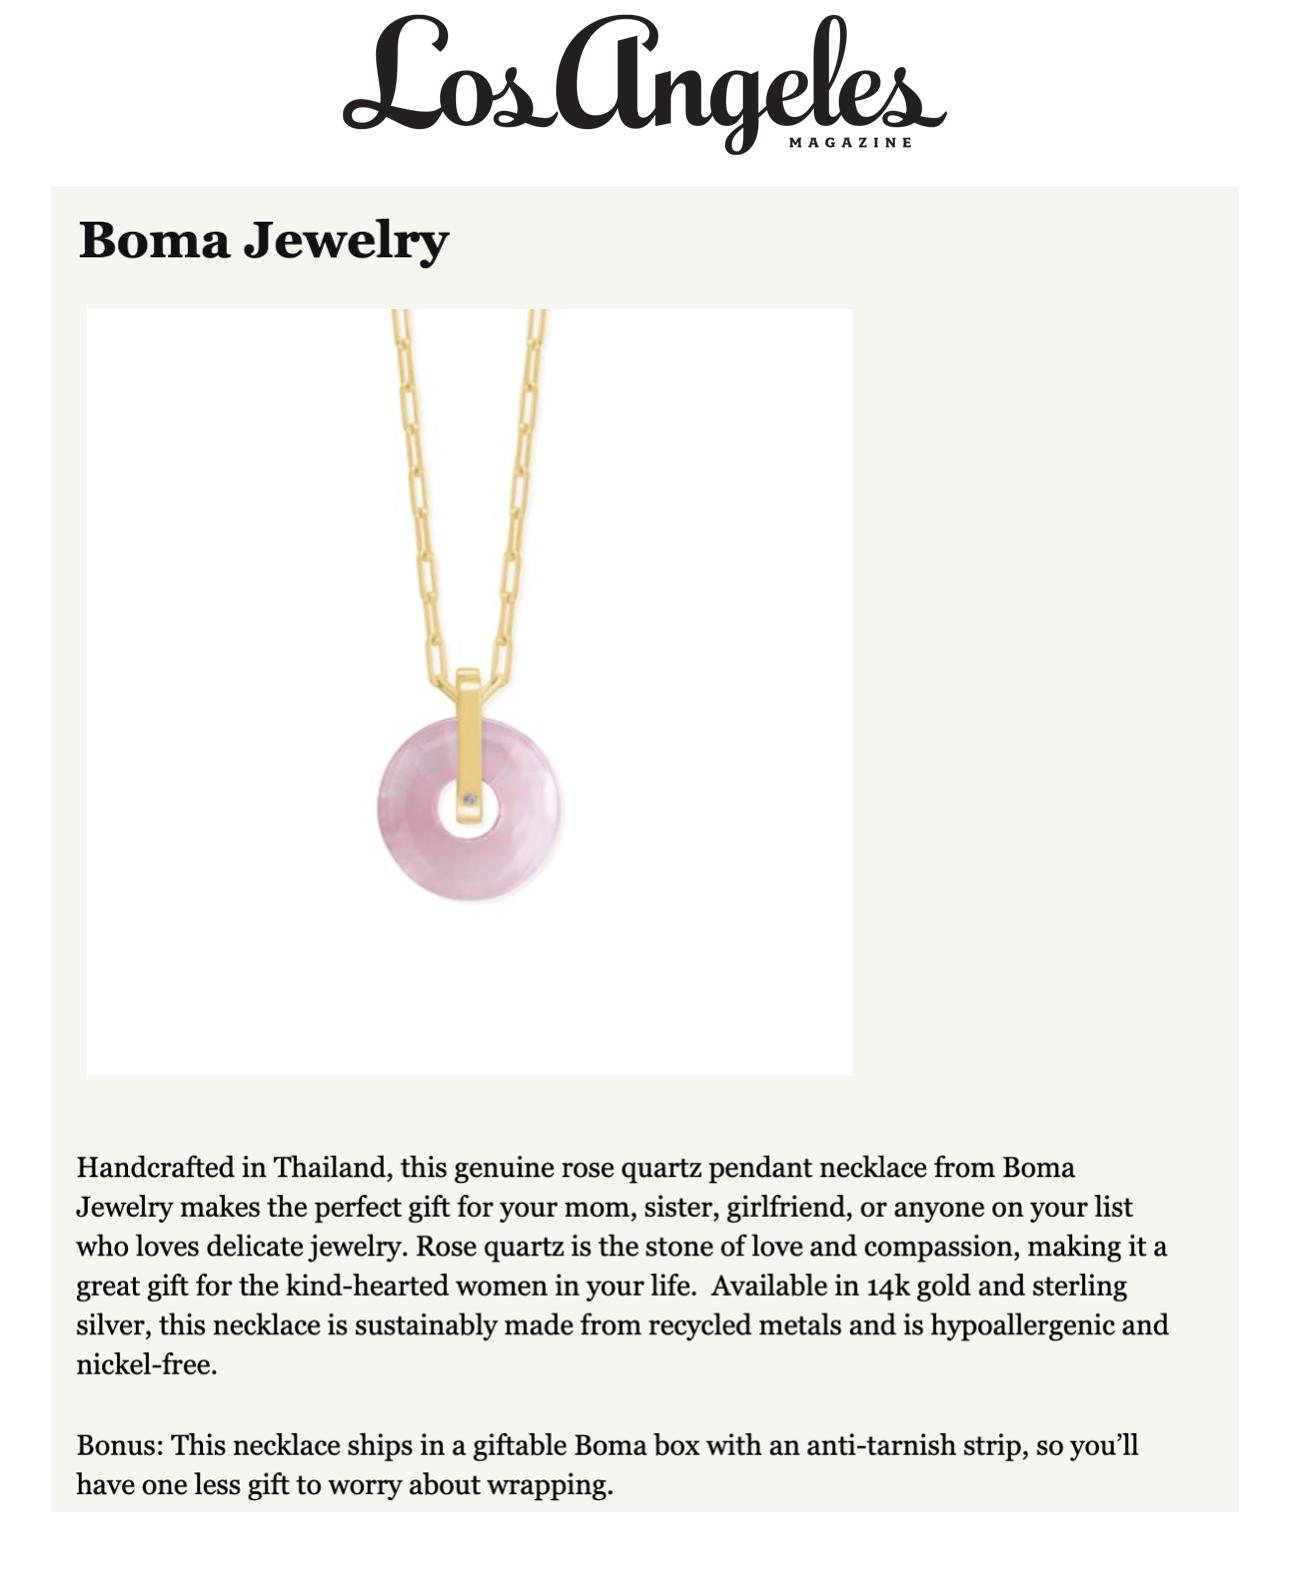 La Magazine - Boma Jewelry - Holiday.png